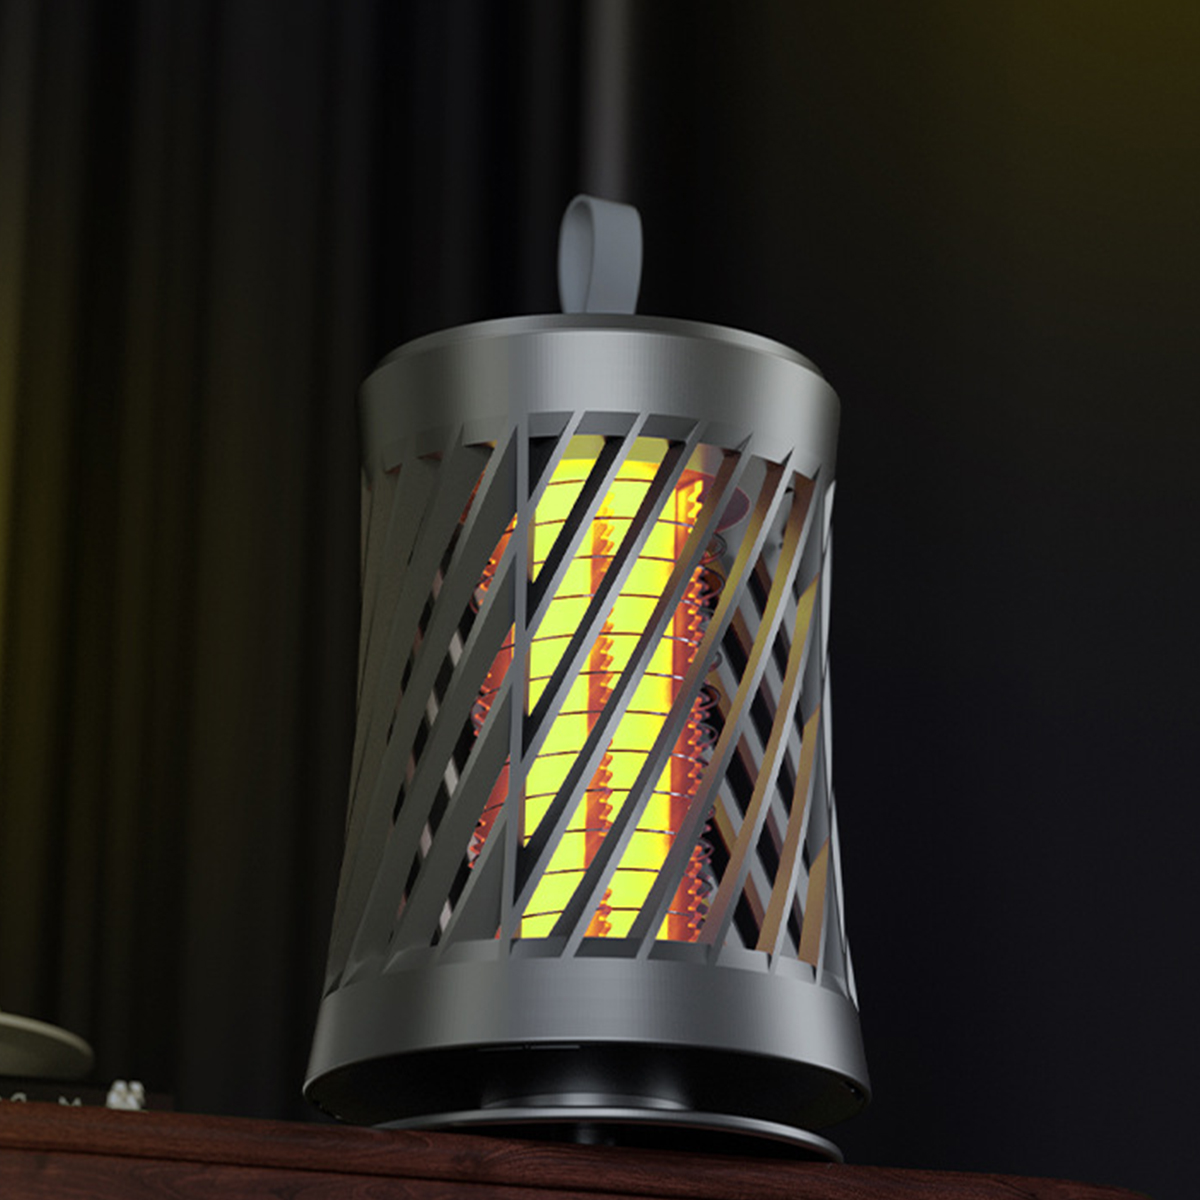 Moskito-Killer-Lampe BRIGHTAKE Photokatalysator USB Stiller Moskito-Fang|50sqm Insektenvernichter Wiederaufladbare